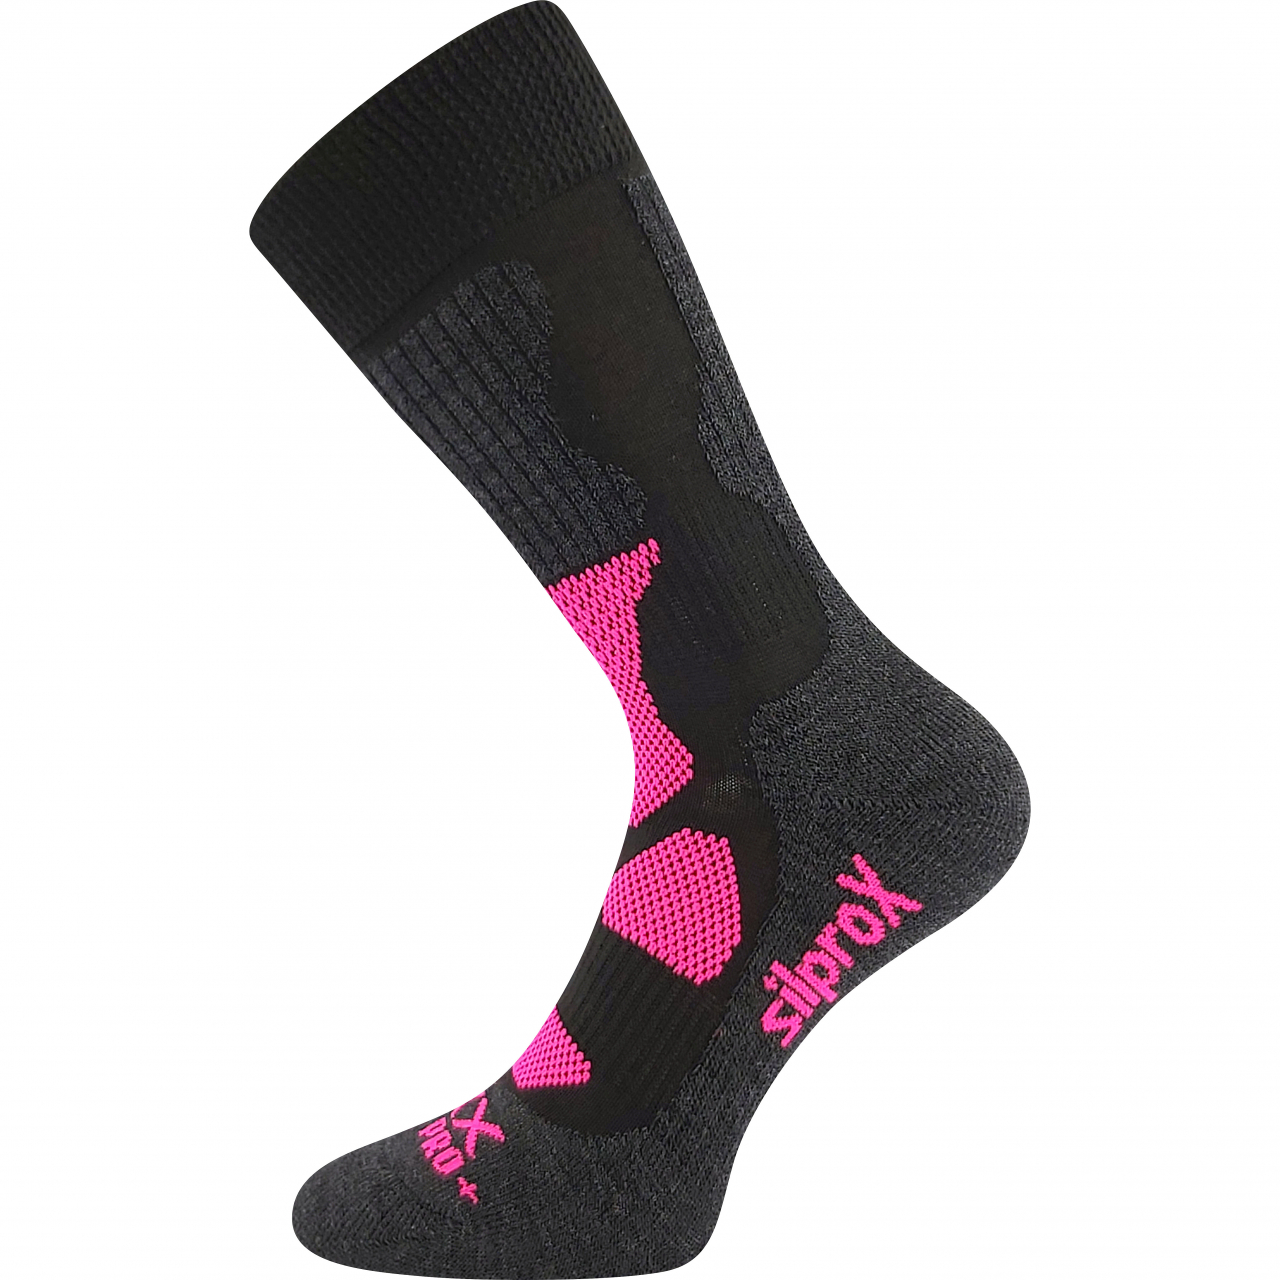 Ponožky termo unisex Voxx Etrex - černé-růžové, 35-38